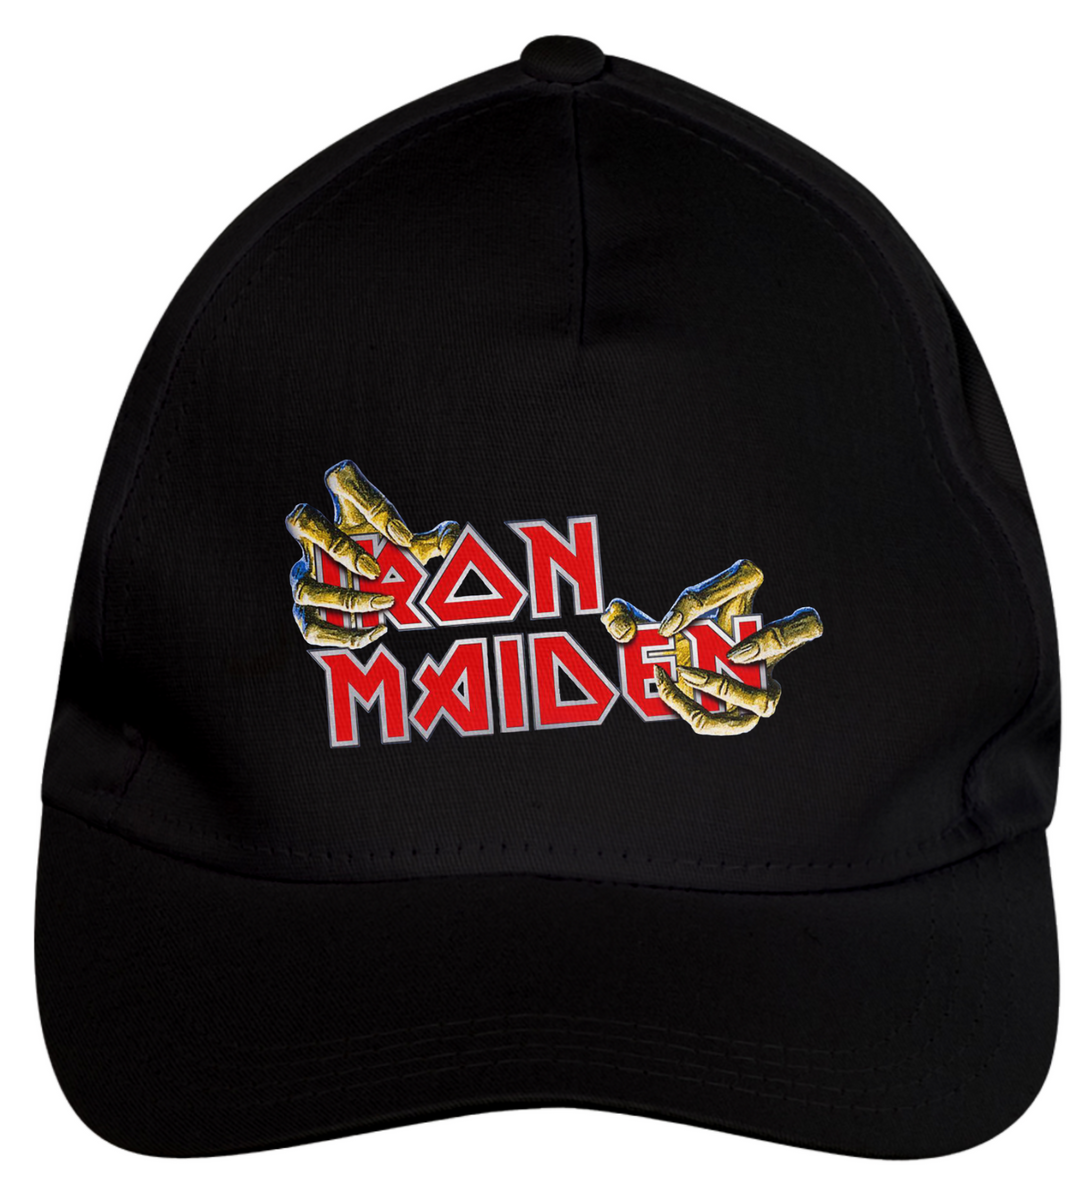 Nome do produto: Iron Maiden